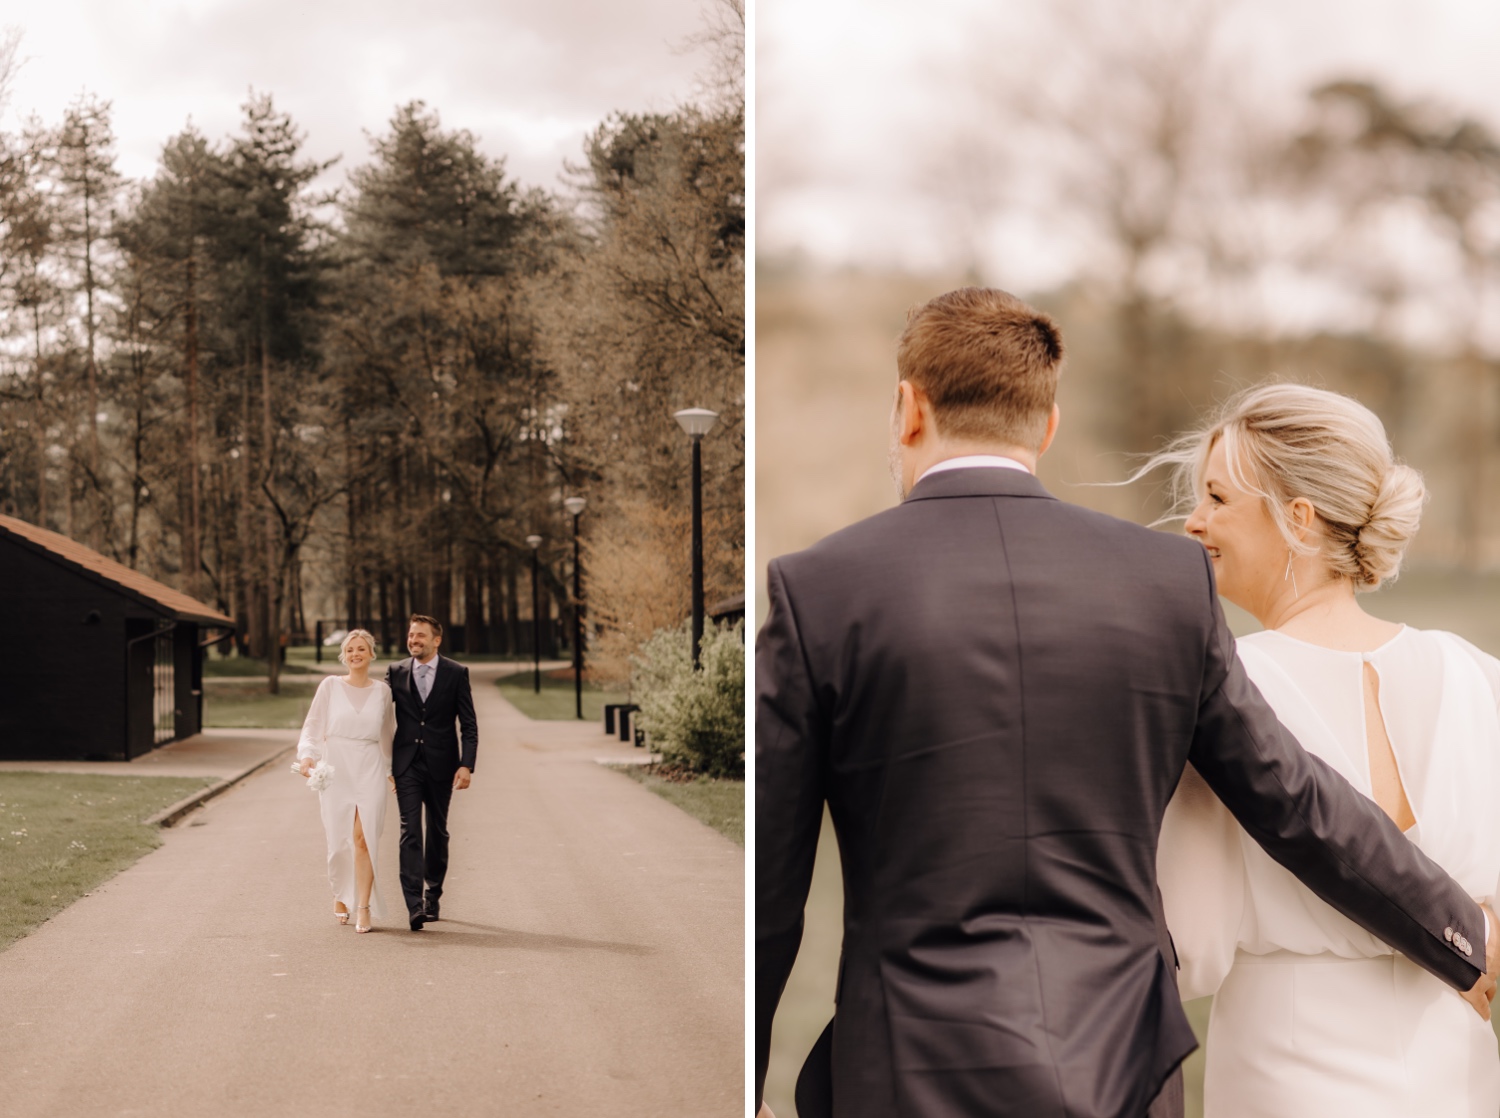 Huwelijksfotograaf Limburg - bruidspaar wandelt tijdens fotoshoot in Averbode